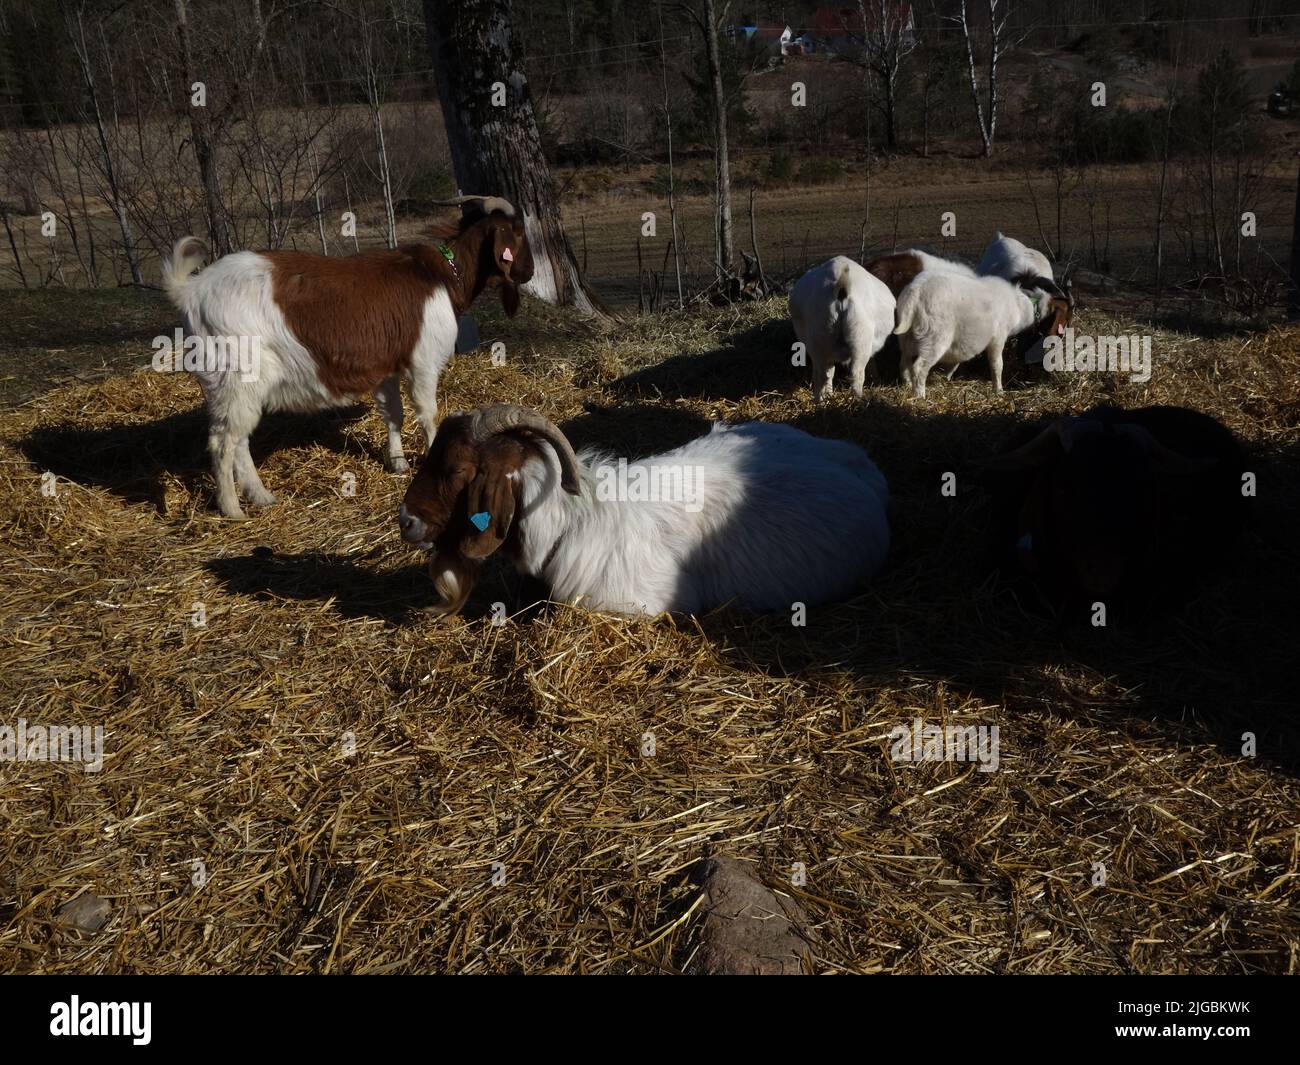 Les chèvres s'apprécient au soleil de printemps et laissent passer les jours. Banque D'Images